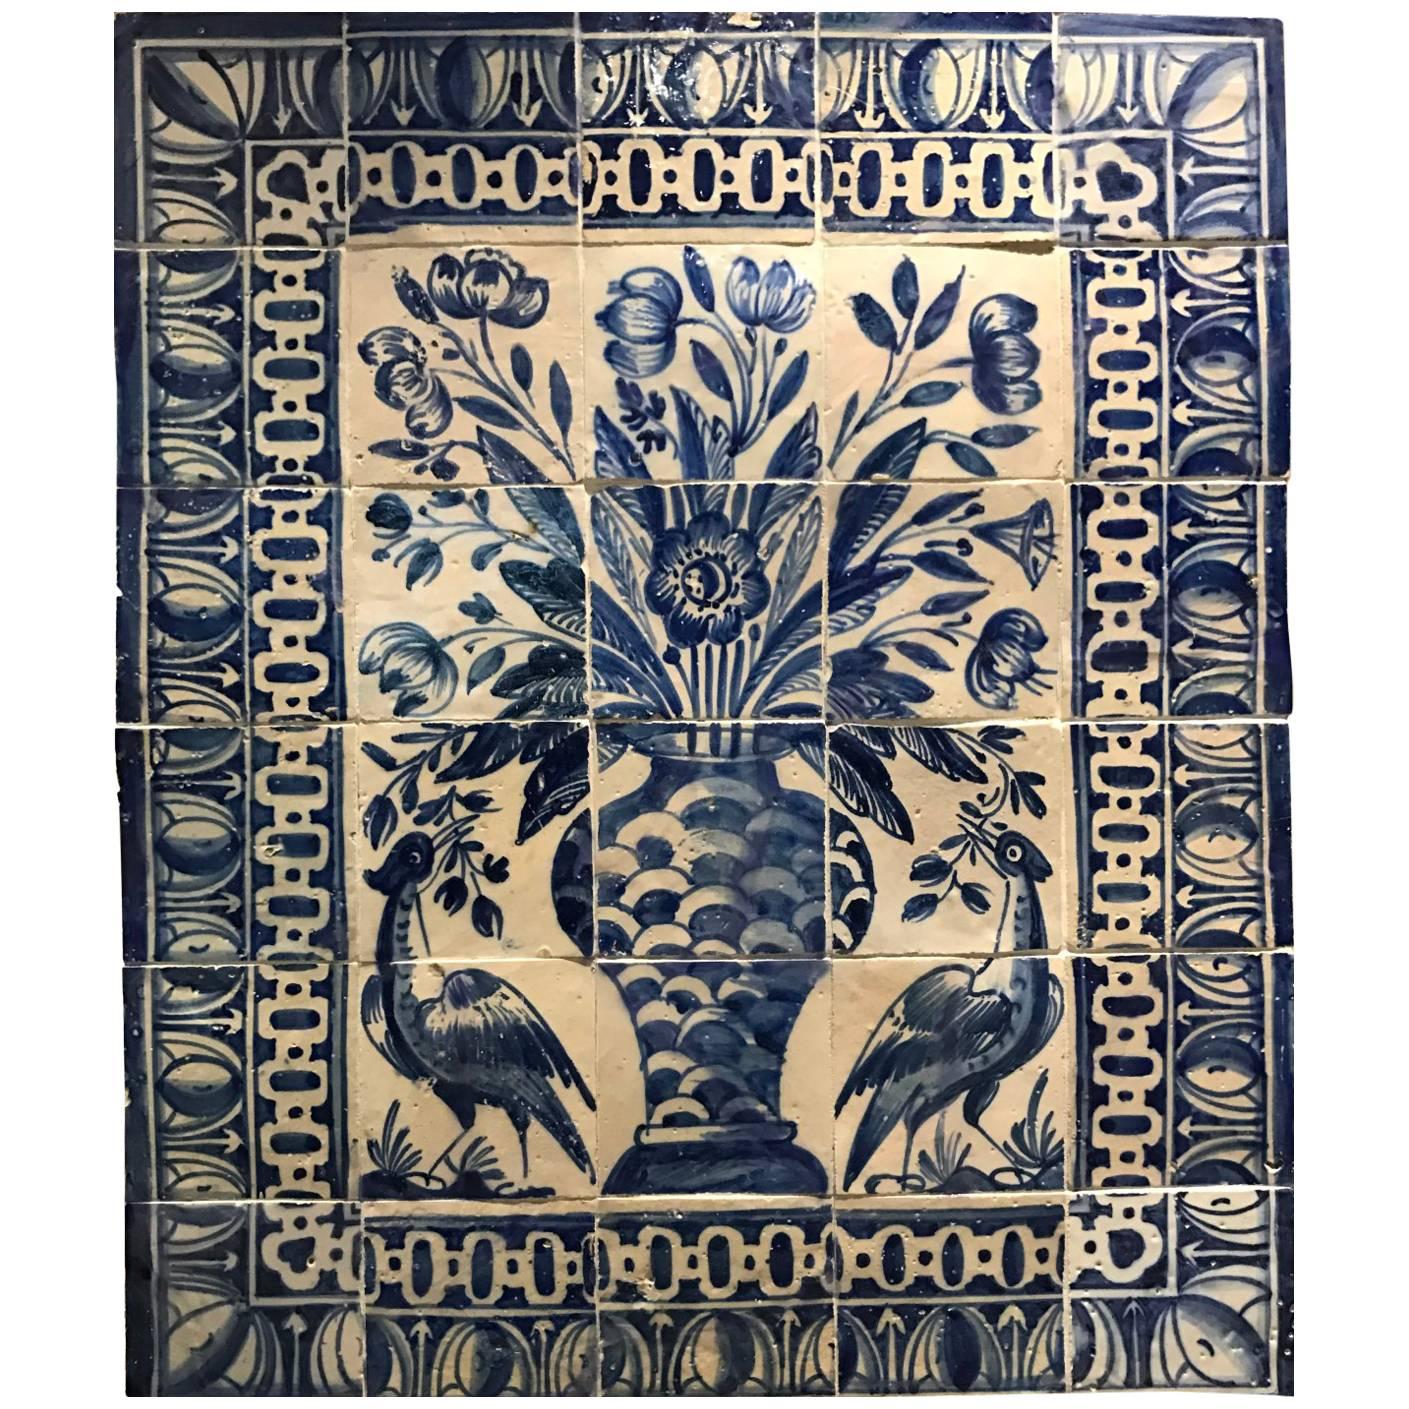 Portuguese 18th Century Tile Panel "Albarrada"